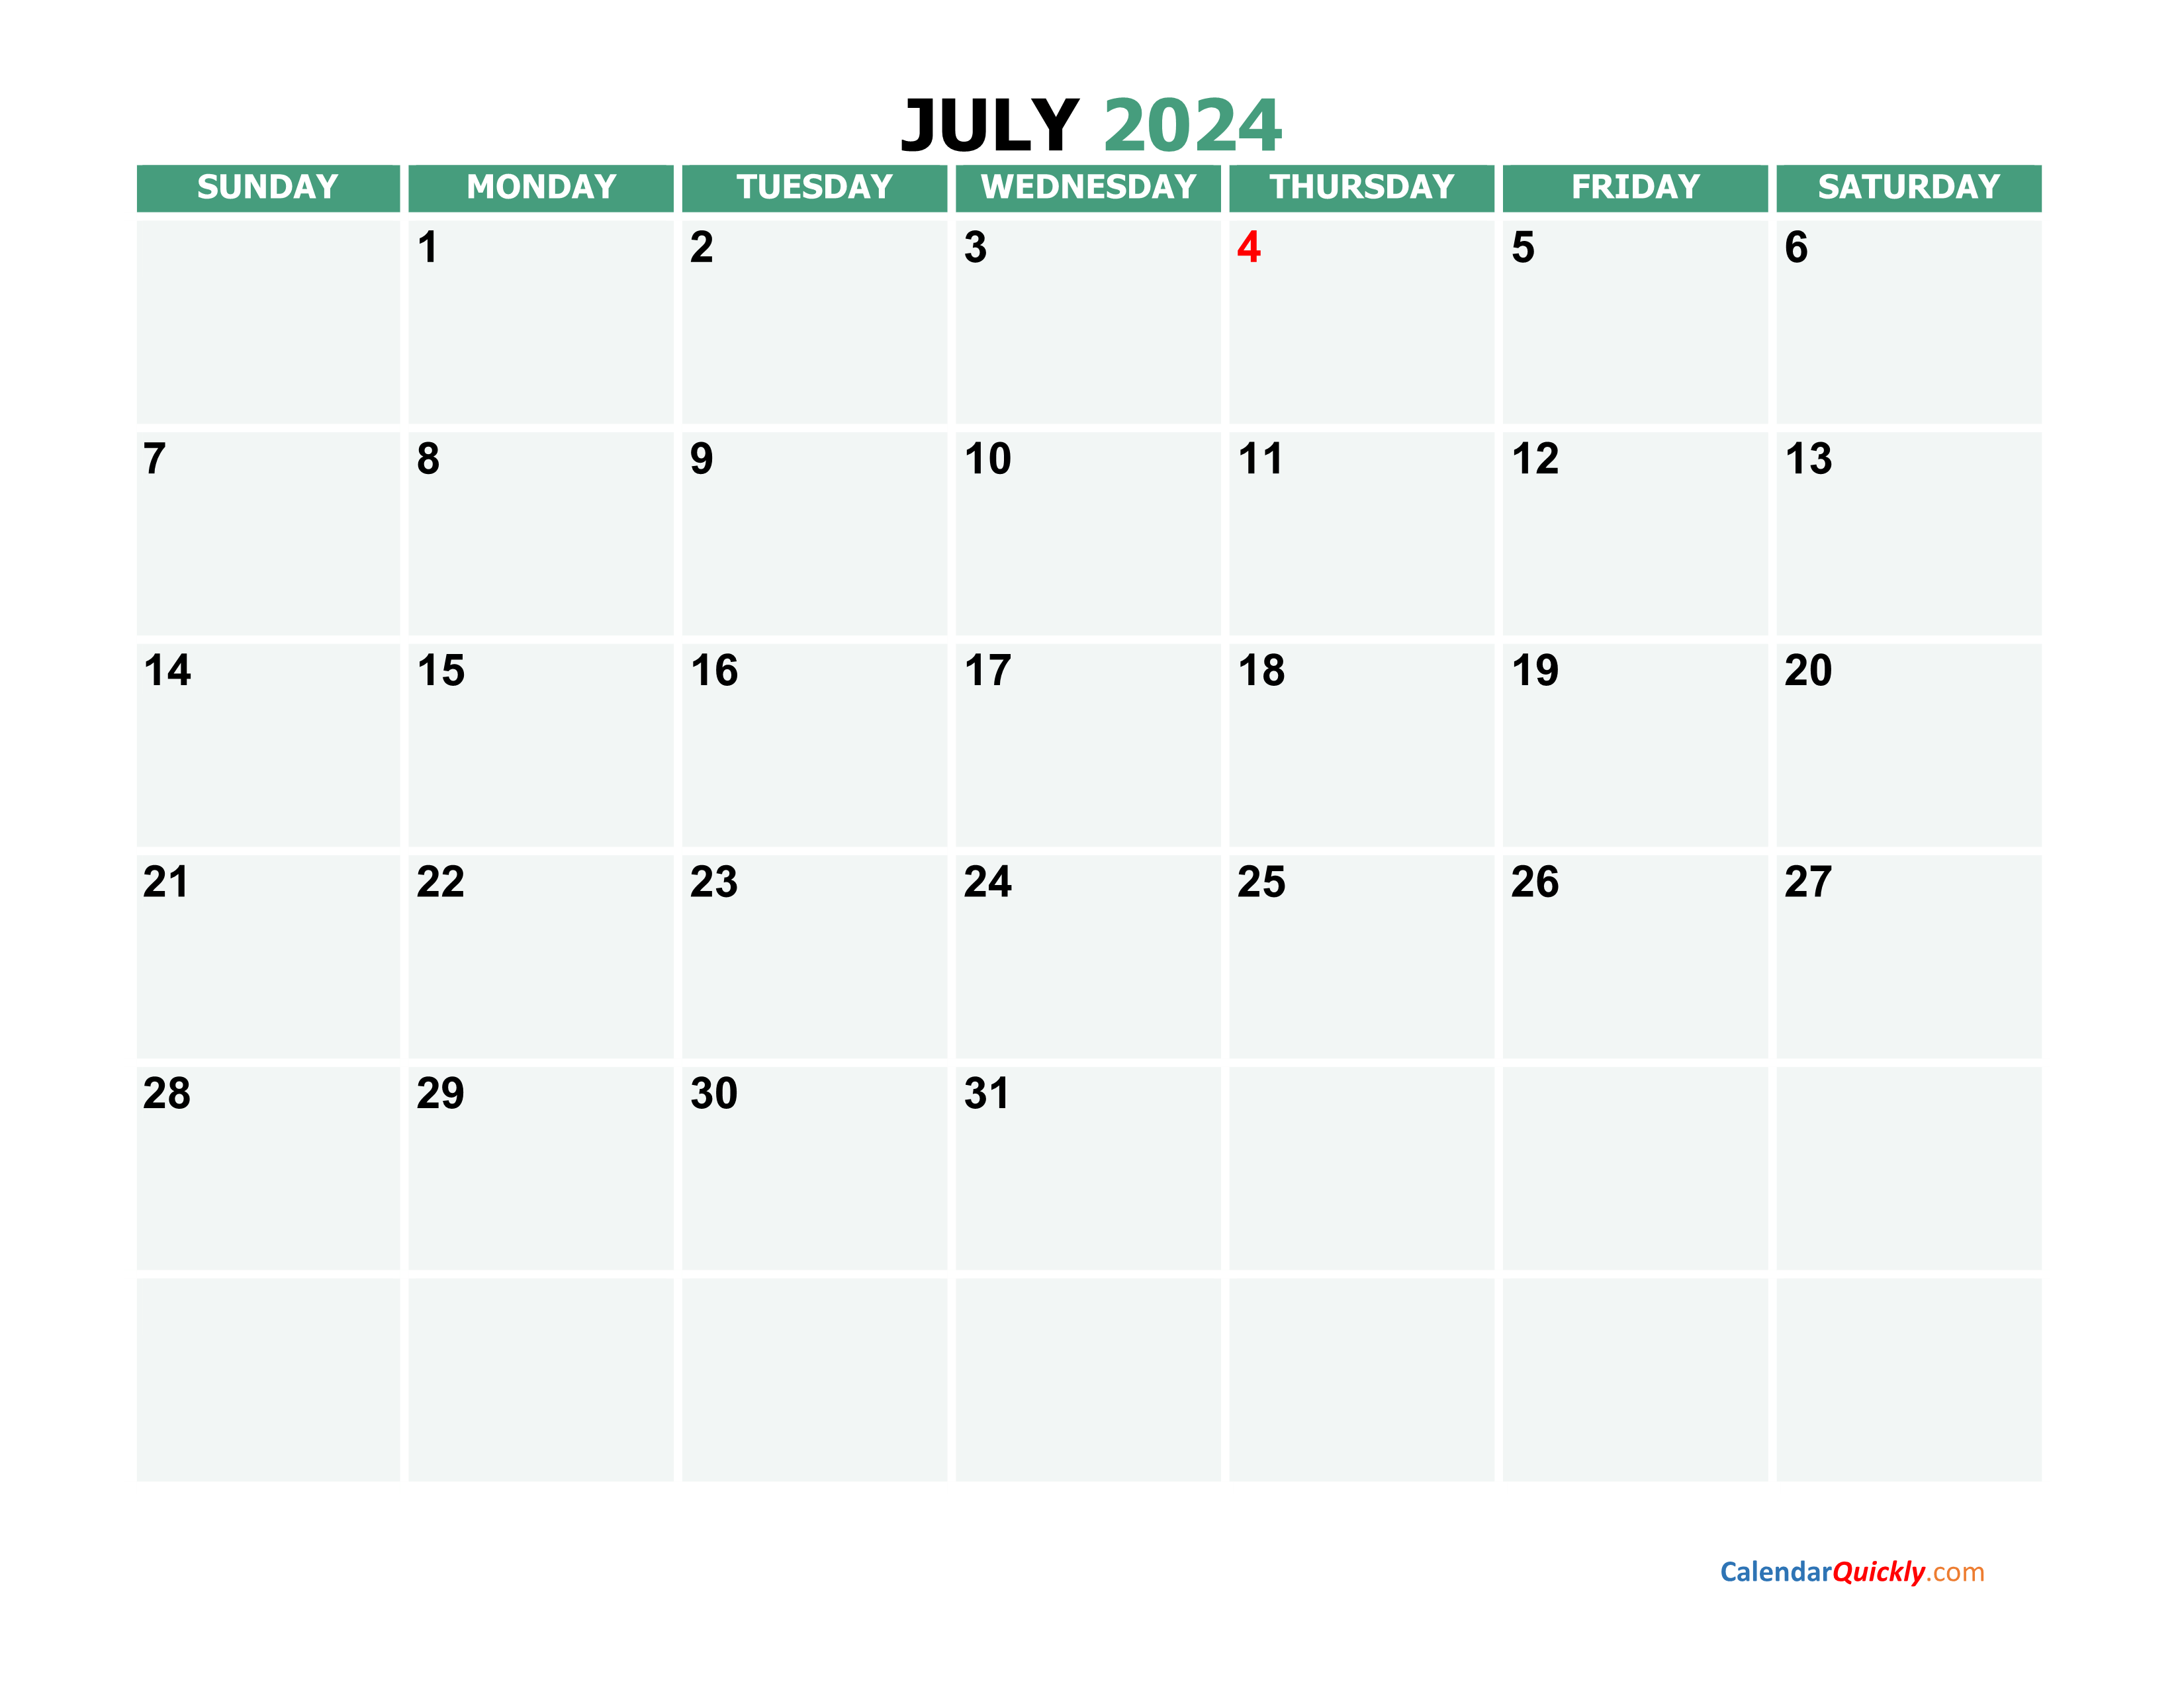 July 2024 Calendars | Calendar Quickly